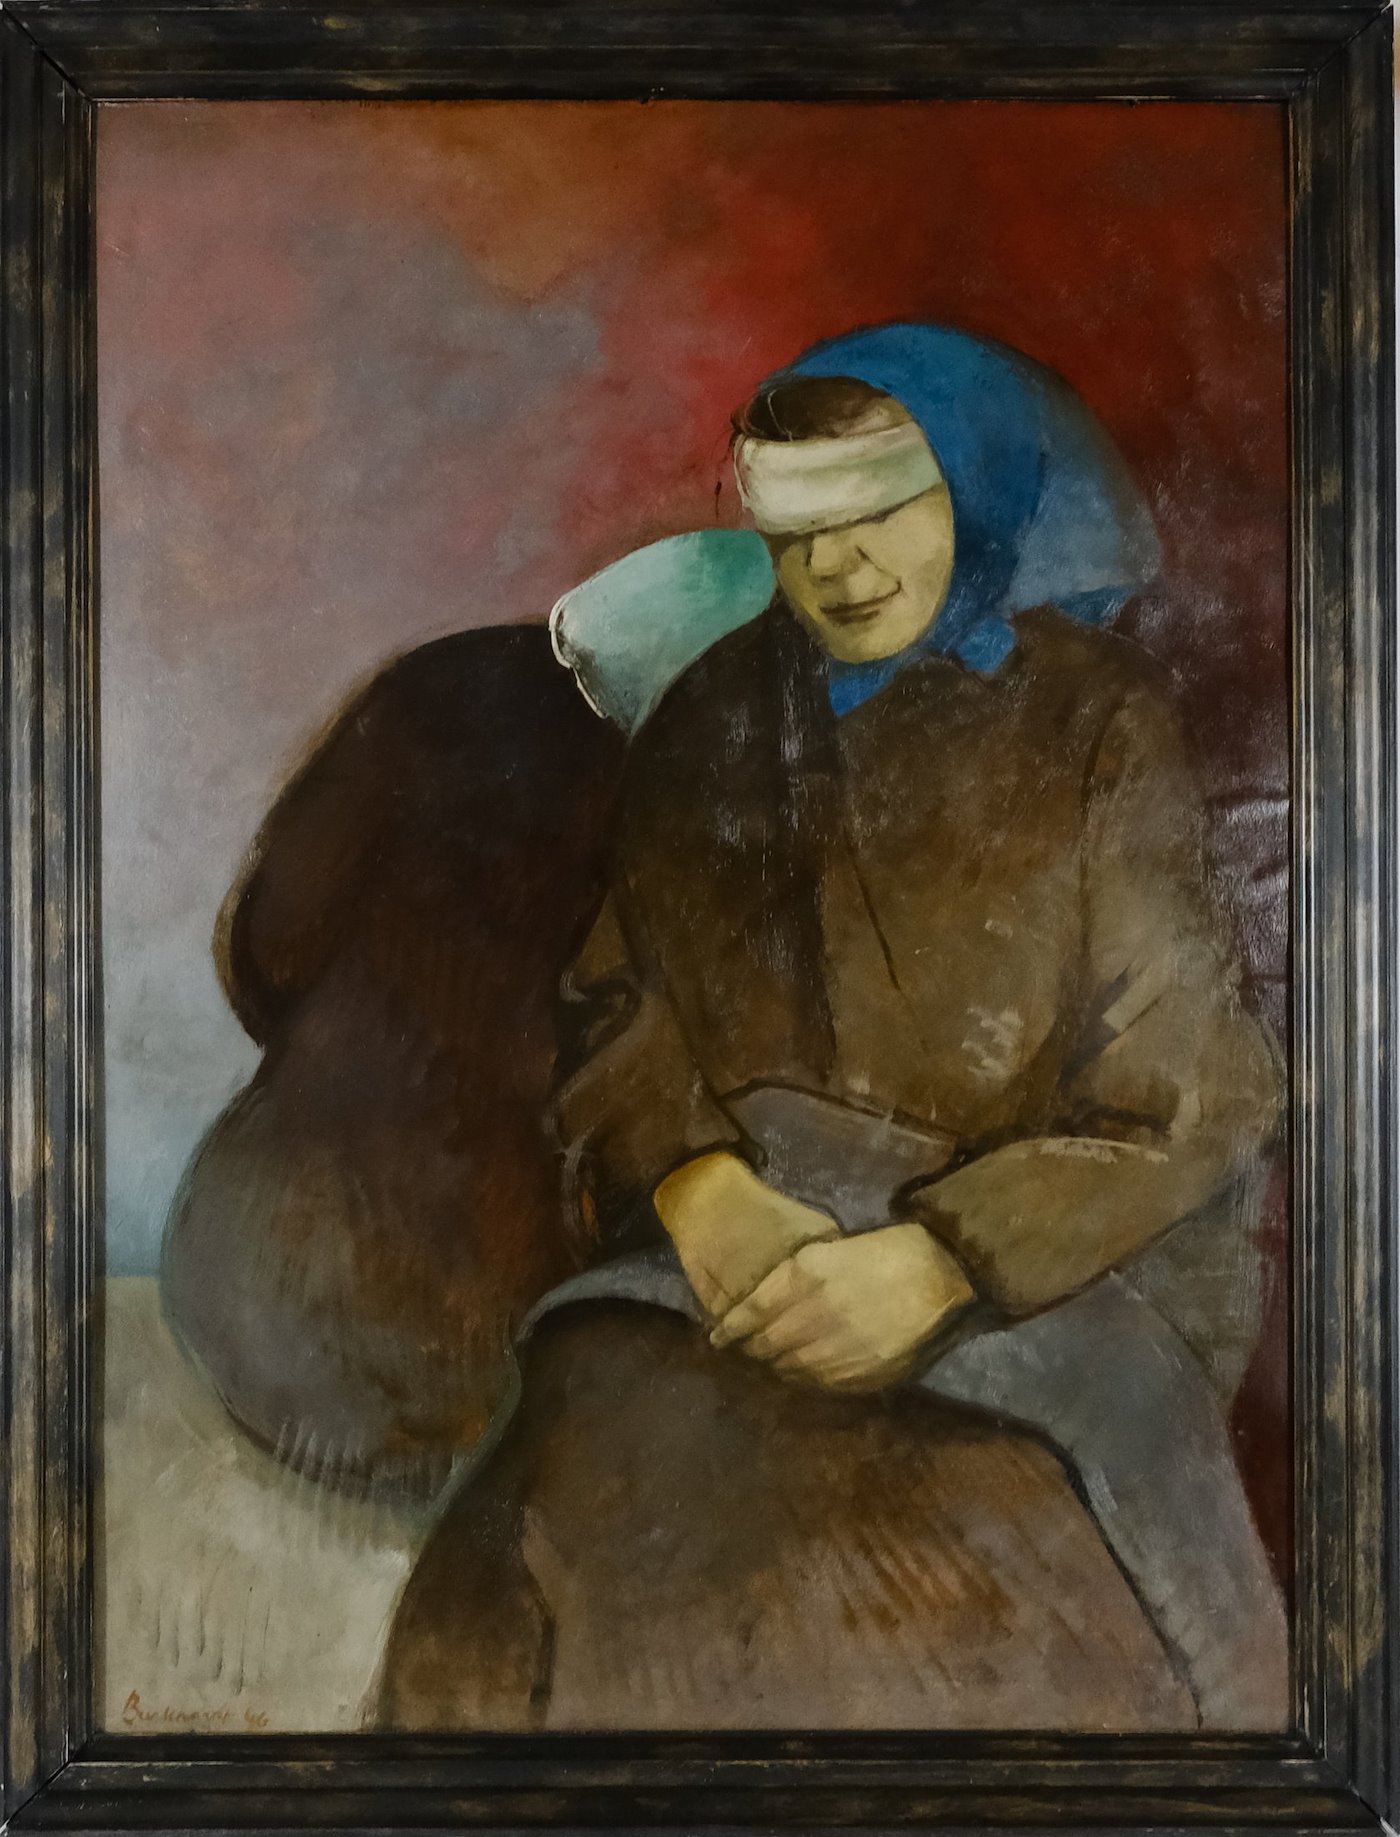 Heinrich Burkhardt - Žena s šátkem přes oči